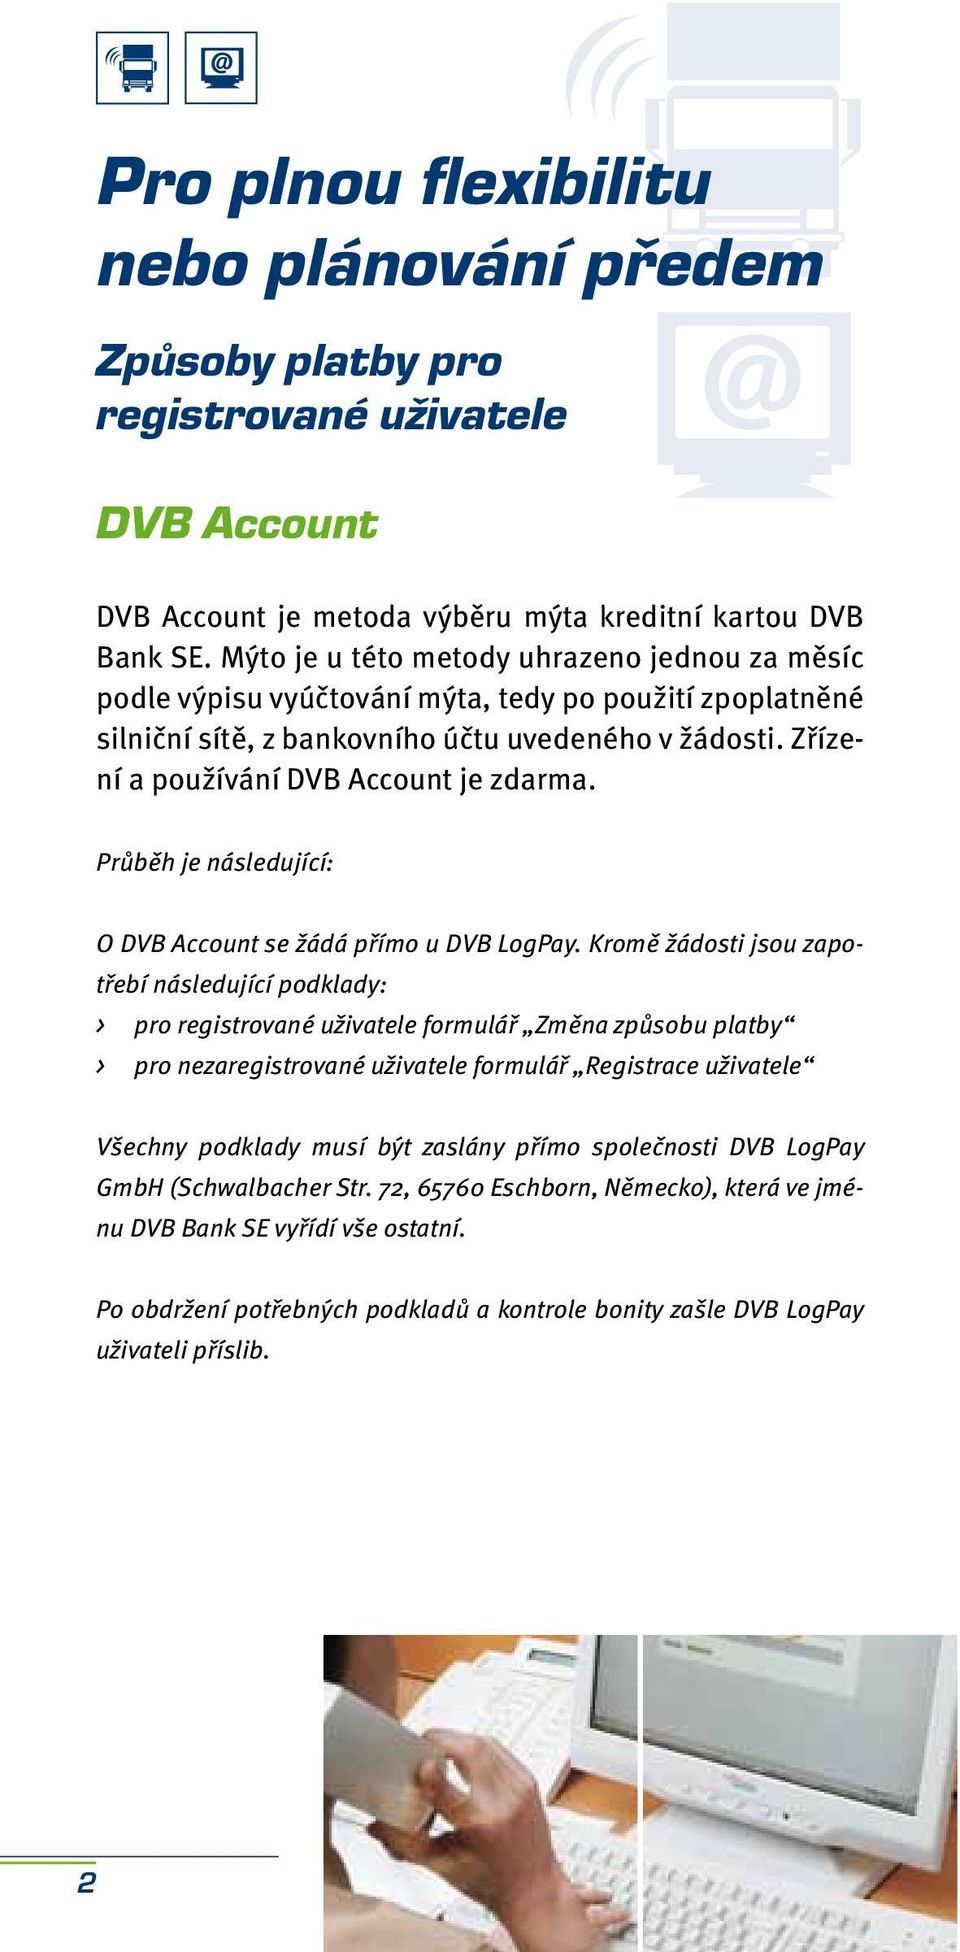 Zřízení a používání DVB Account je zdarma. Průběh je následující: O DVB Account se žádá přímo u DVB LogPay.